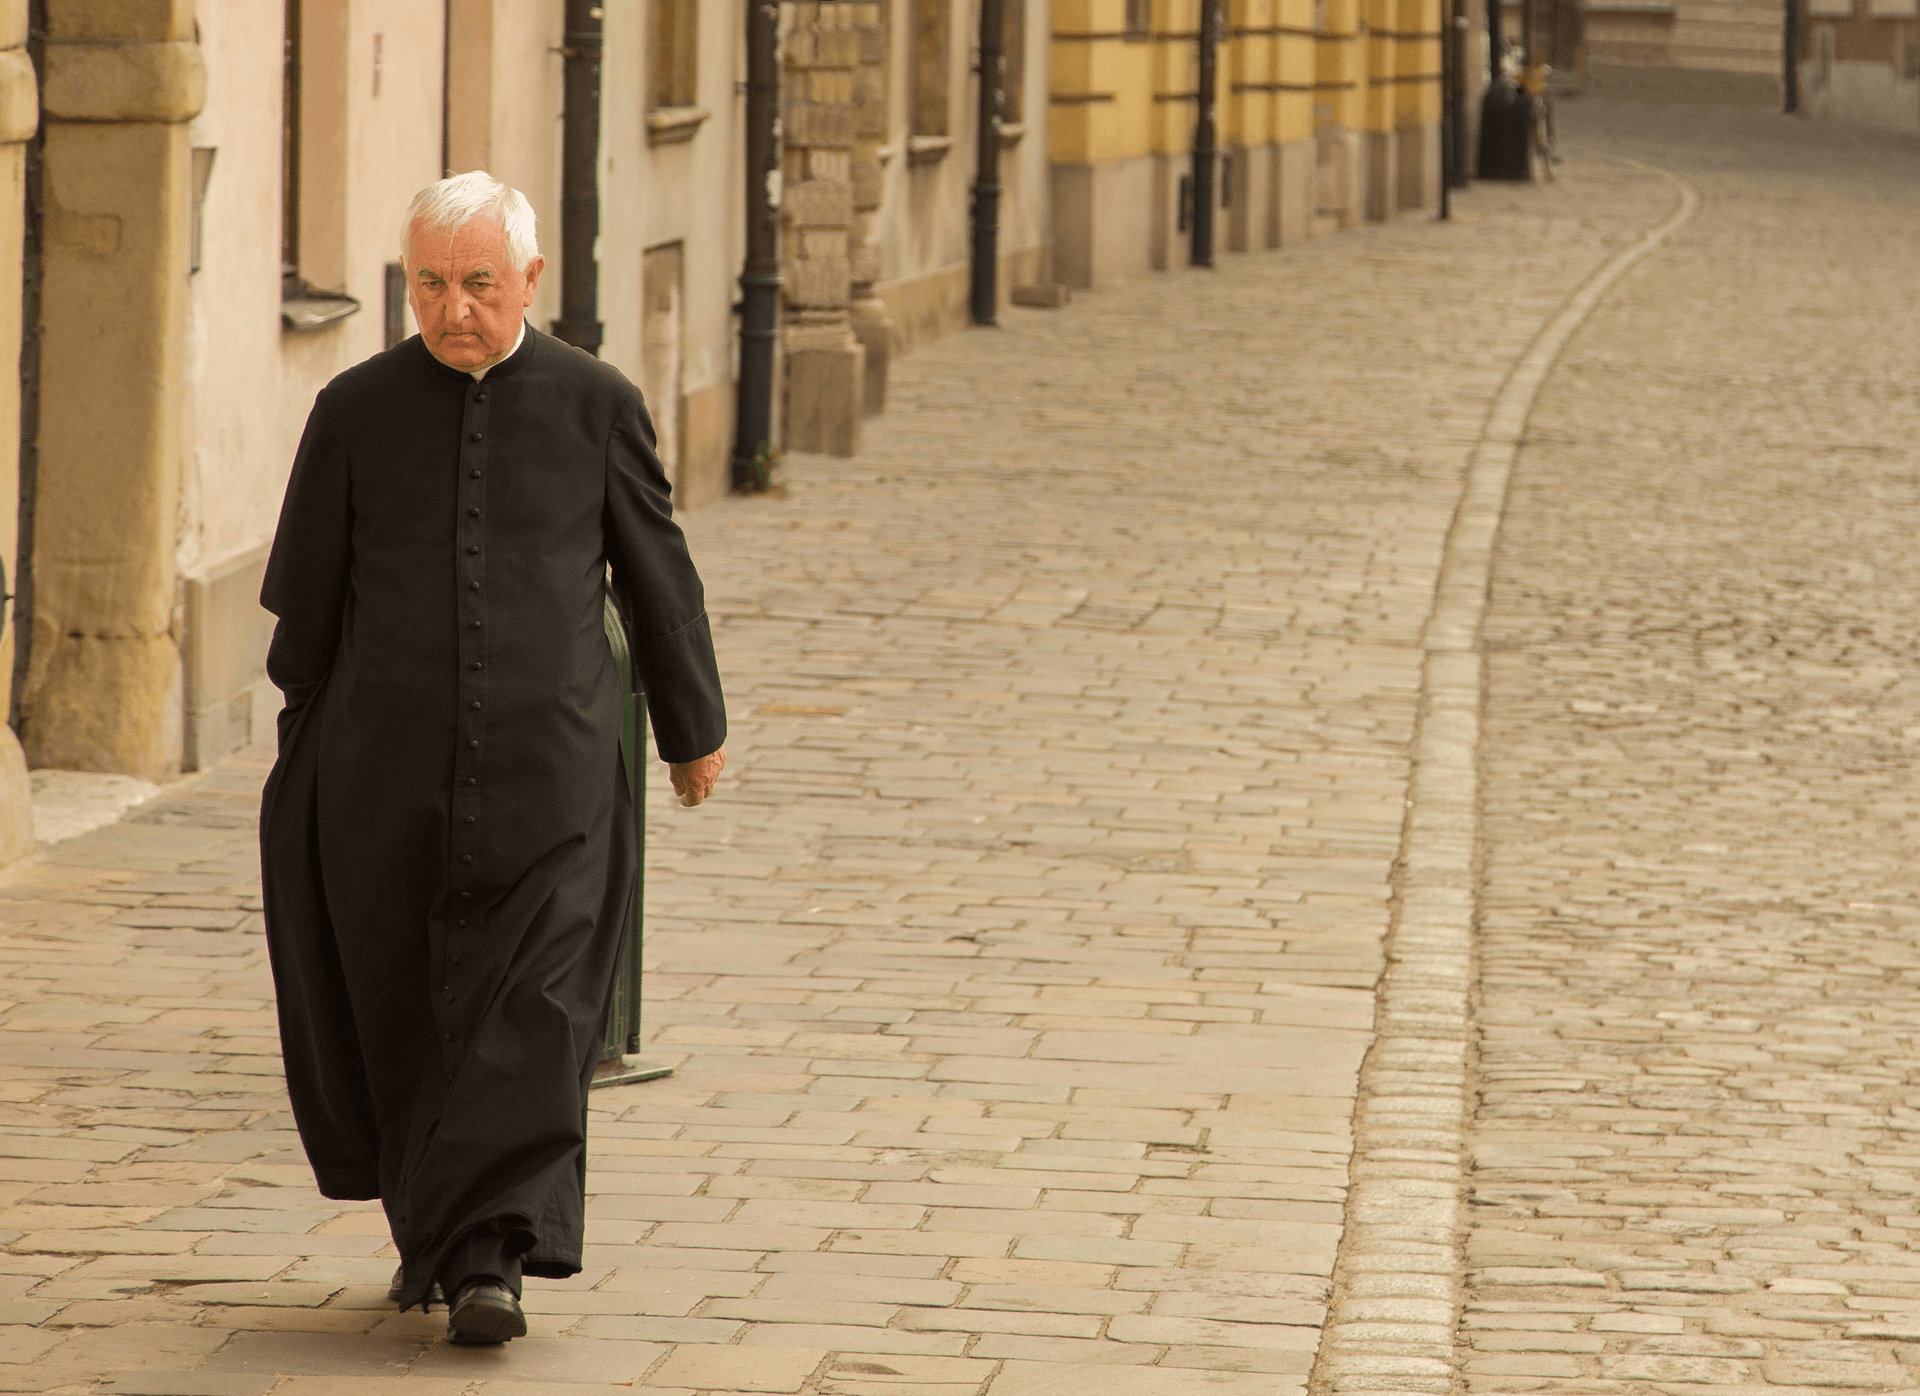 Fare il prete è un lavoro? Un religioso anziano cammina per strada, da solo